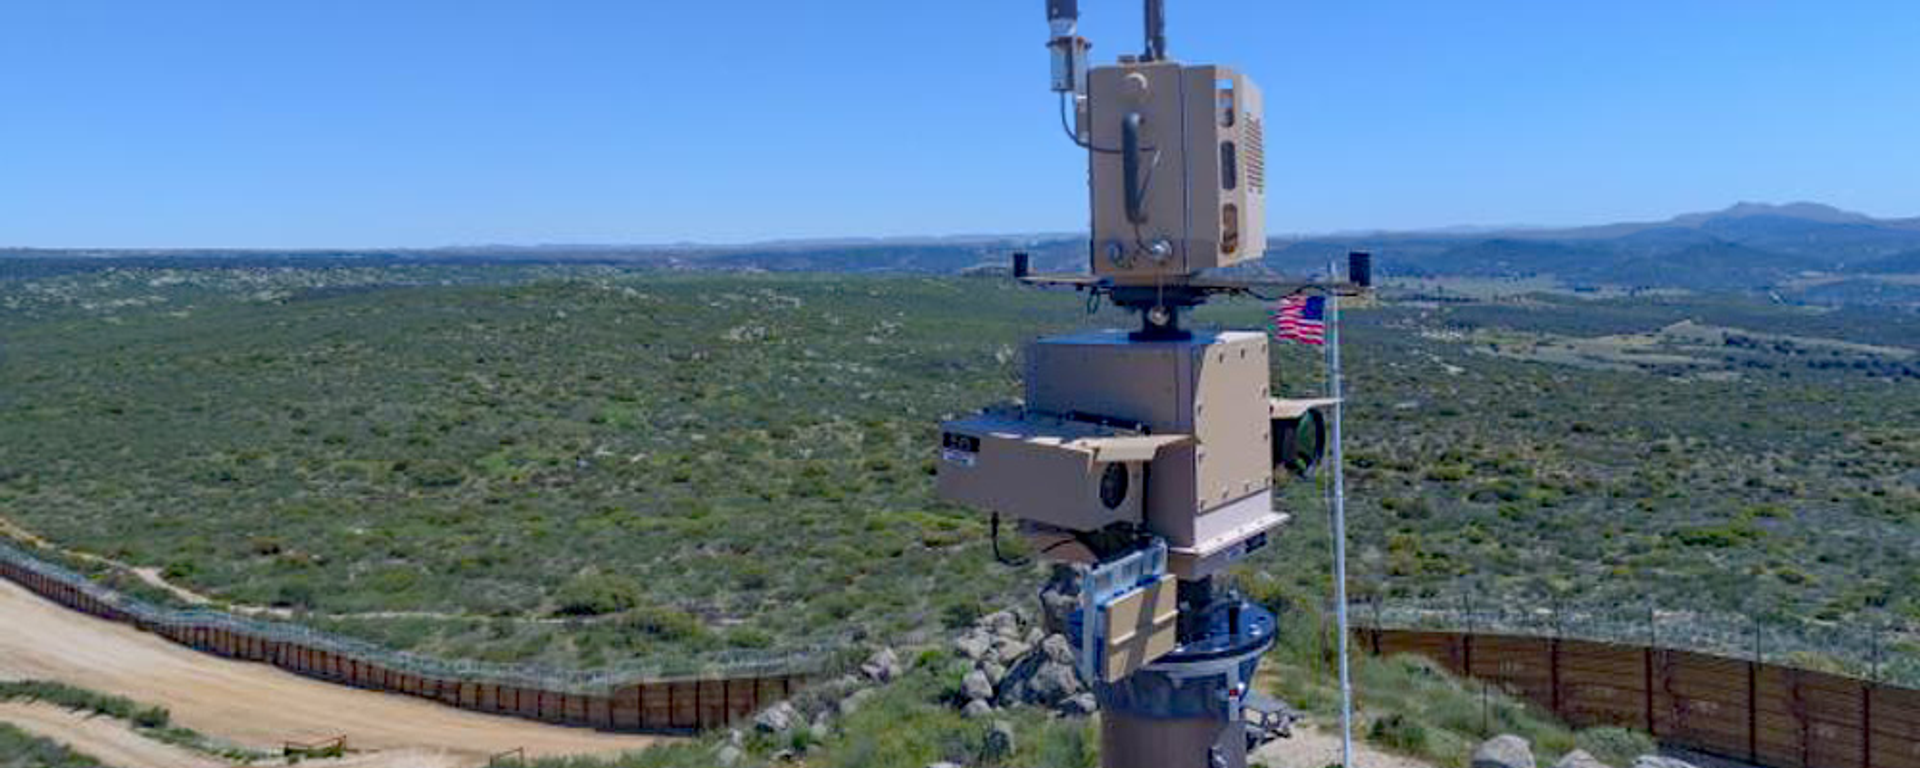 An autonomous surveillance tower along the US-Mexico Border. File photo. - Sputnik International, 1920, 25.02.2021